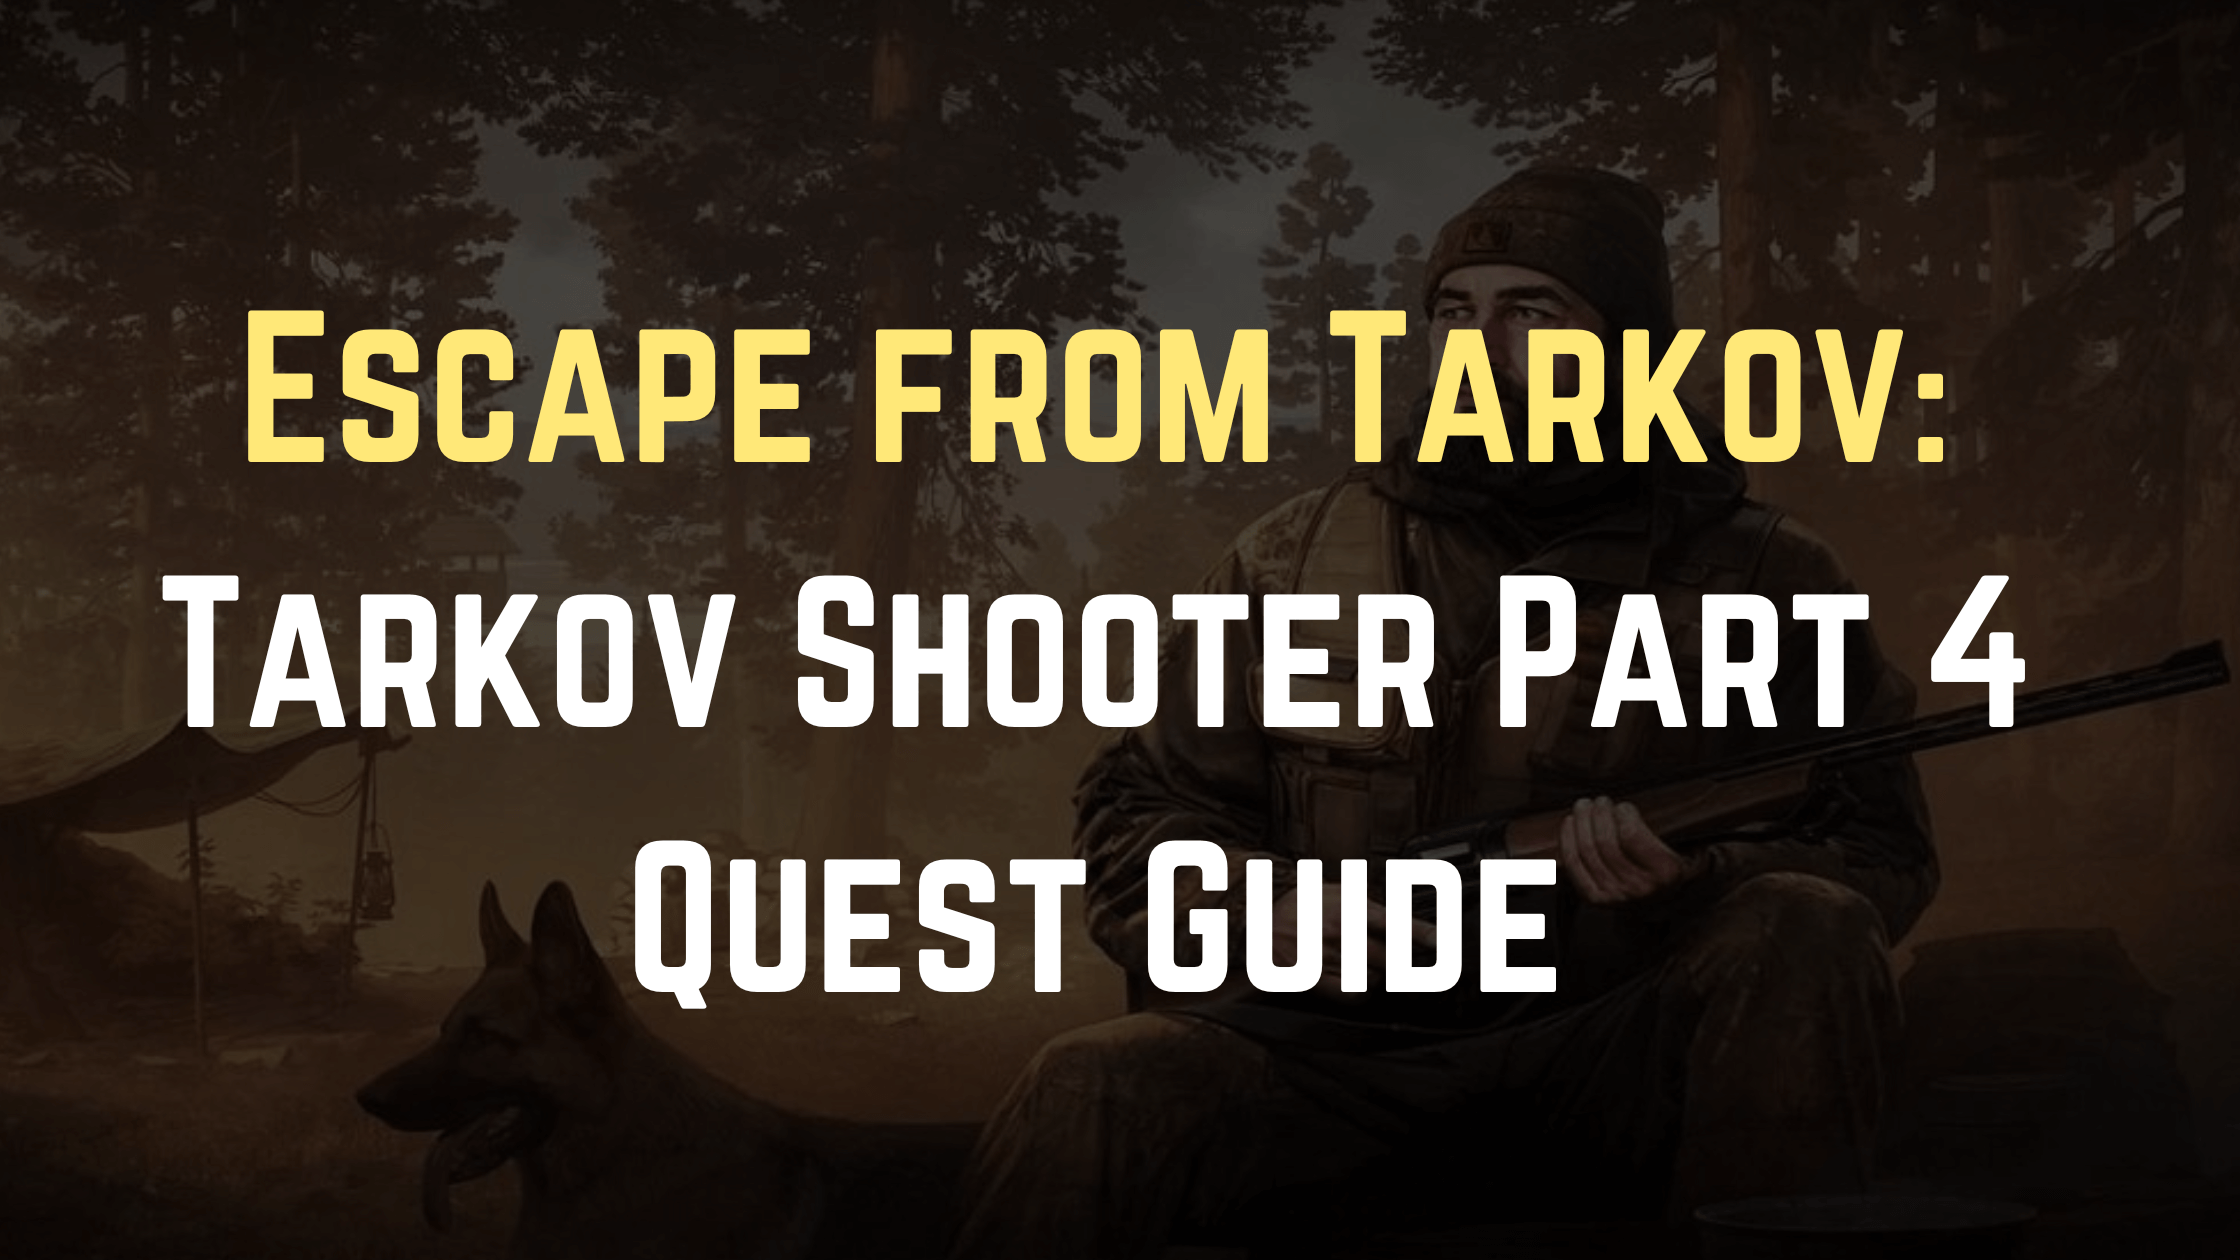 Tarkov Shooter Part 4